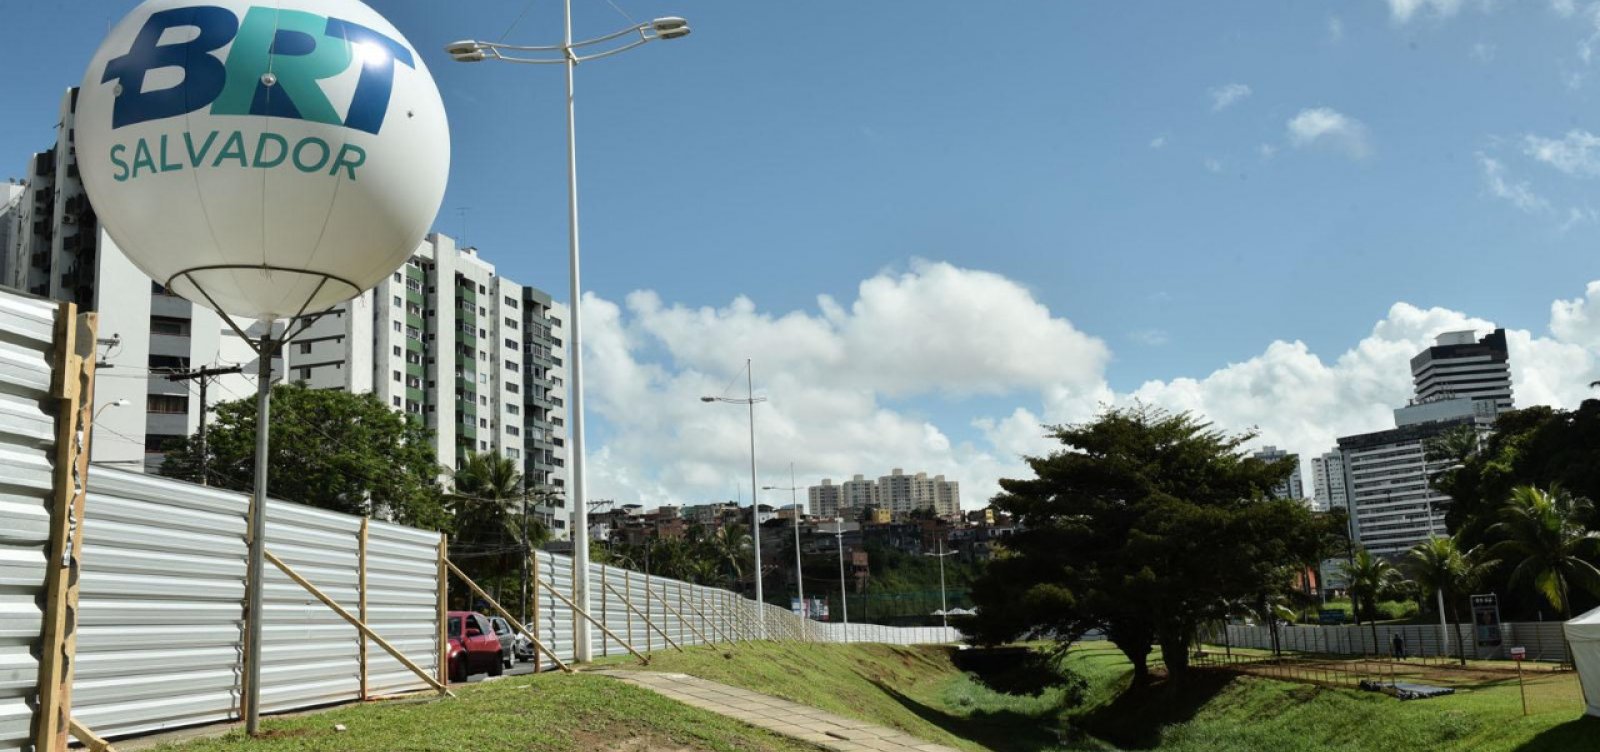 Instituto dos Arquitetos na Bahia pede à Justiça suspensão imediata das obras do BRT